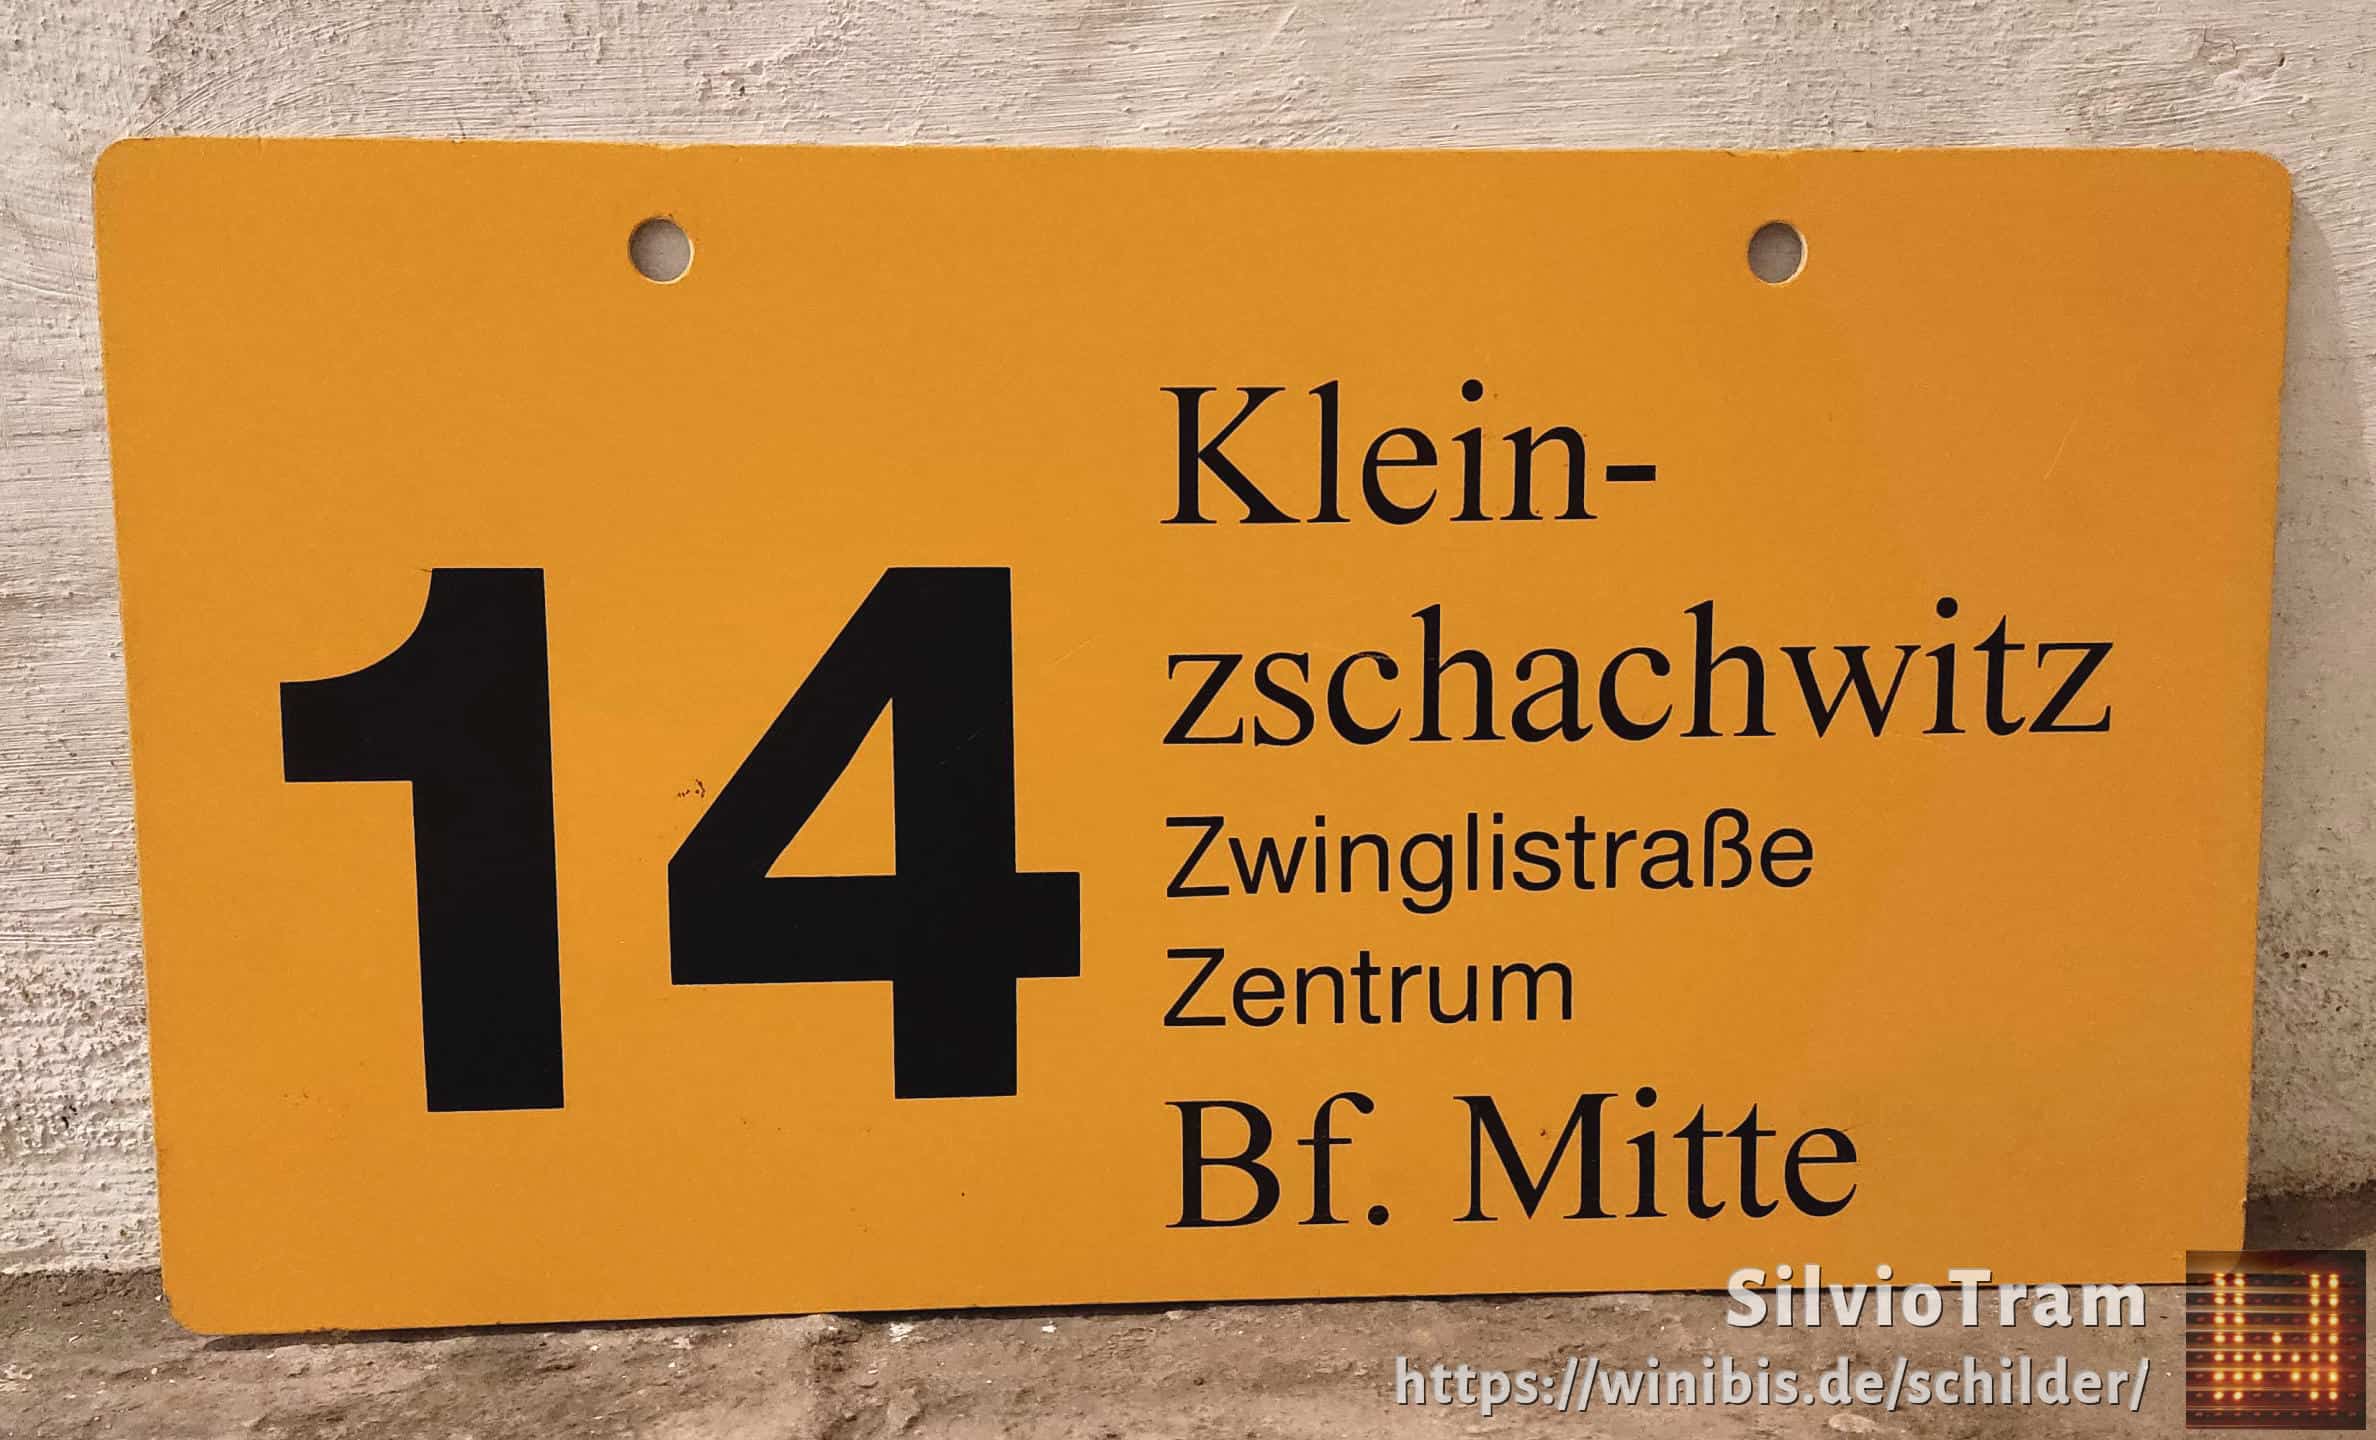 Ein seltenes Straßenbahn-Linienschild aus Dresden der Linie 14 von Kleinnach zschachwitz nach Bf. Mitte #3